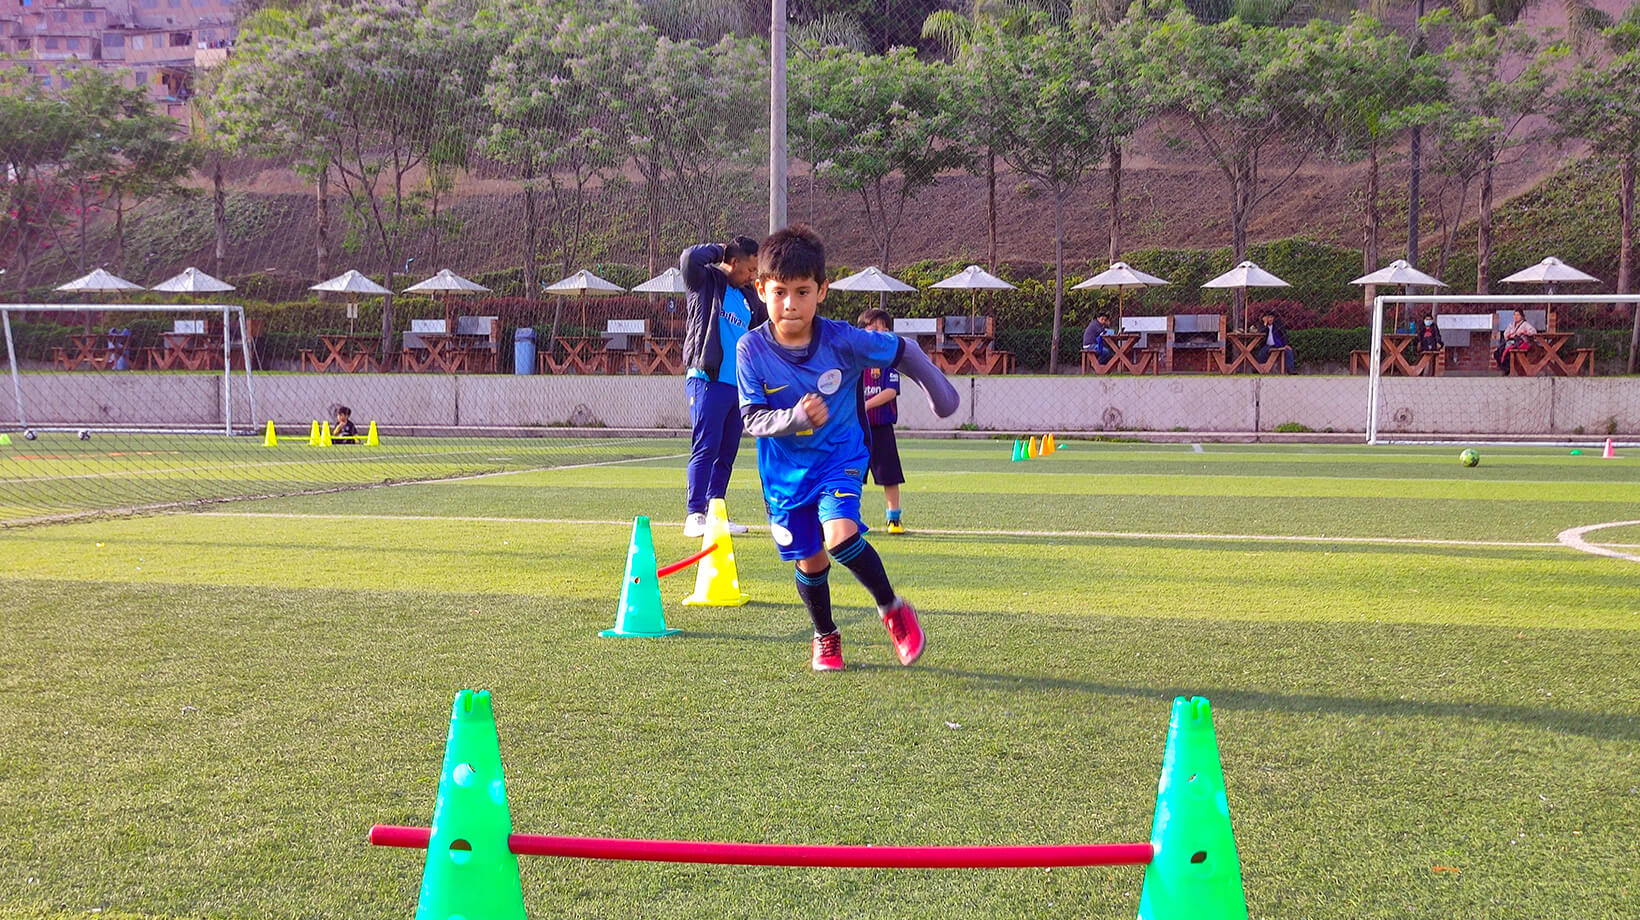 FUTBOL FORMATIVO: La preparación física en el fútbol infantil